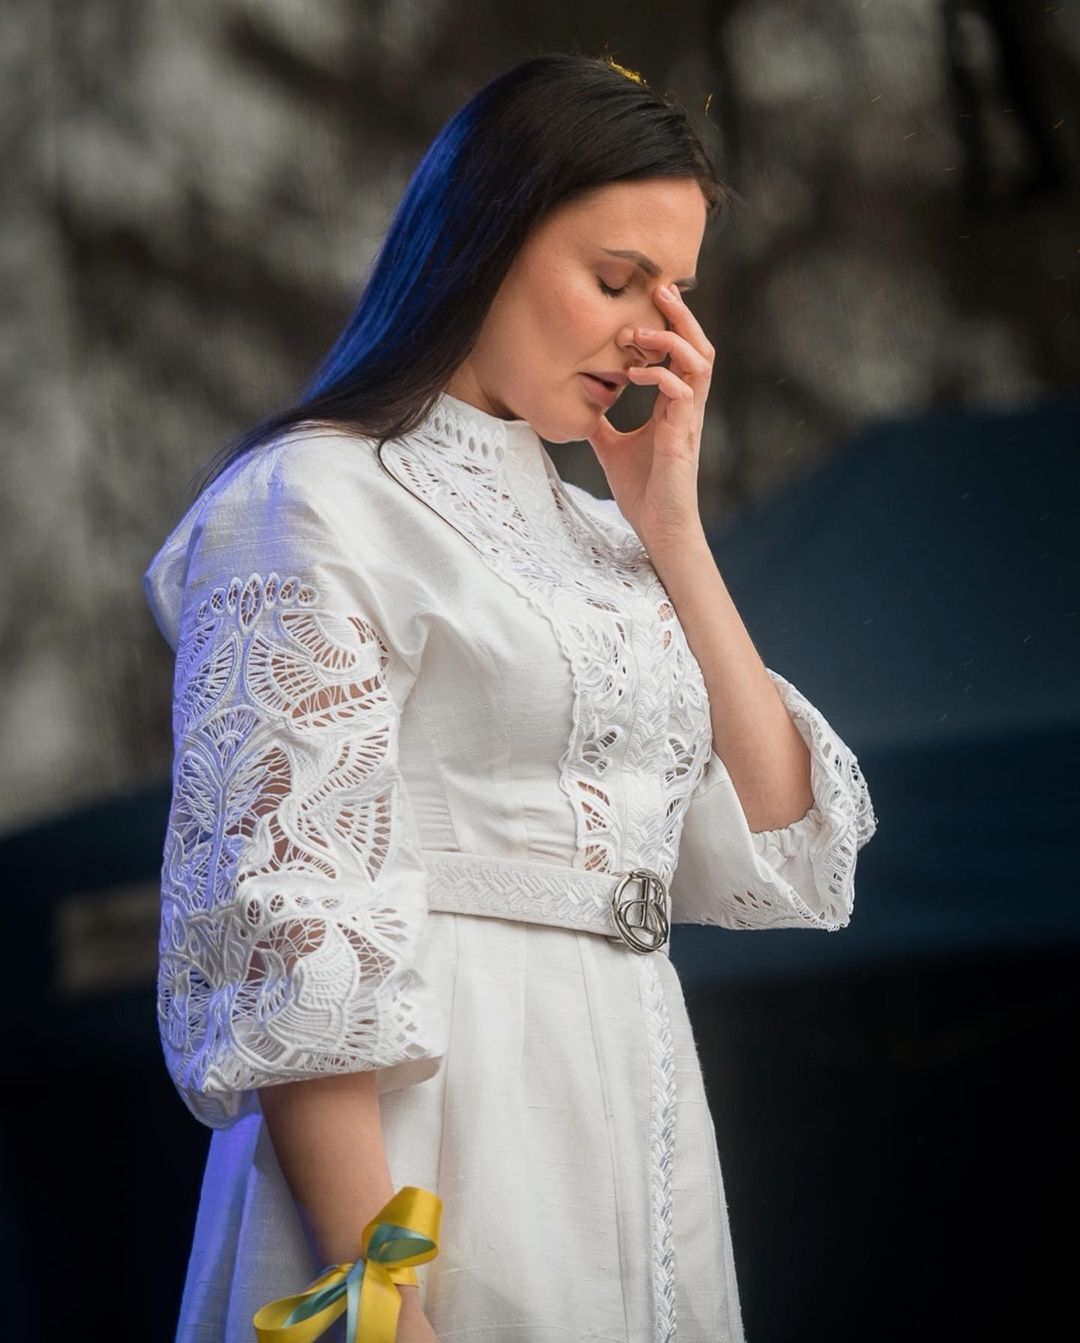 "Колишній врятував мені життя". Співачка Міла Нітіч приголомшила зізнанням, як їй вдалося вирватися з Ірпеня на початку вторгнення